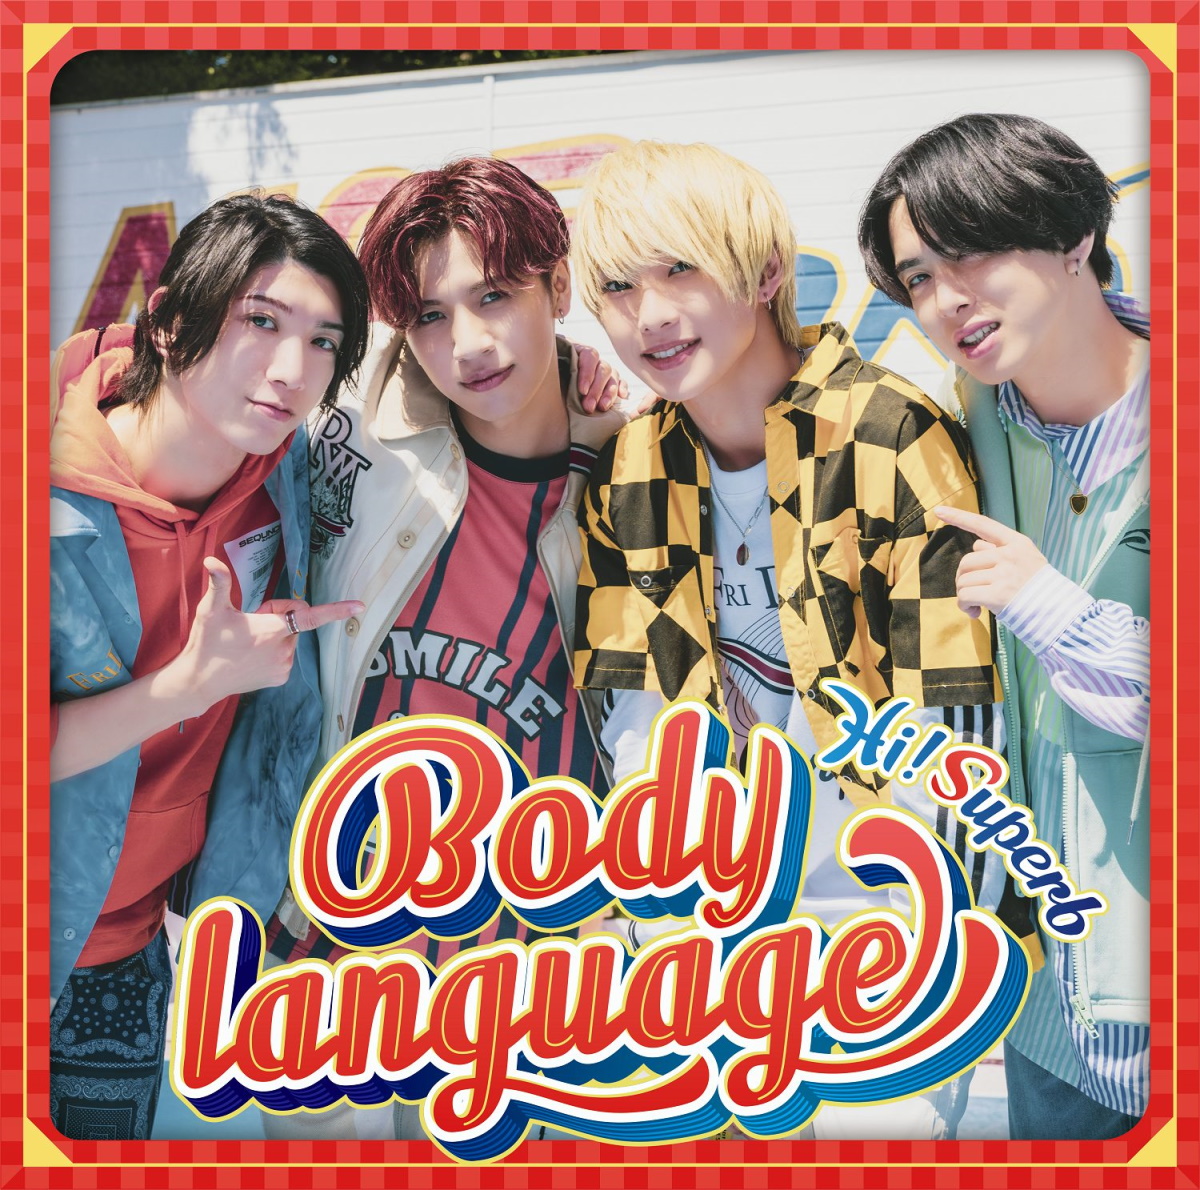 『Hi!Superb - Body language 歌詞』収録の『Body language』ジャケット